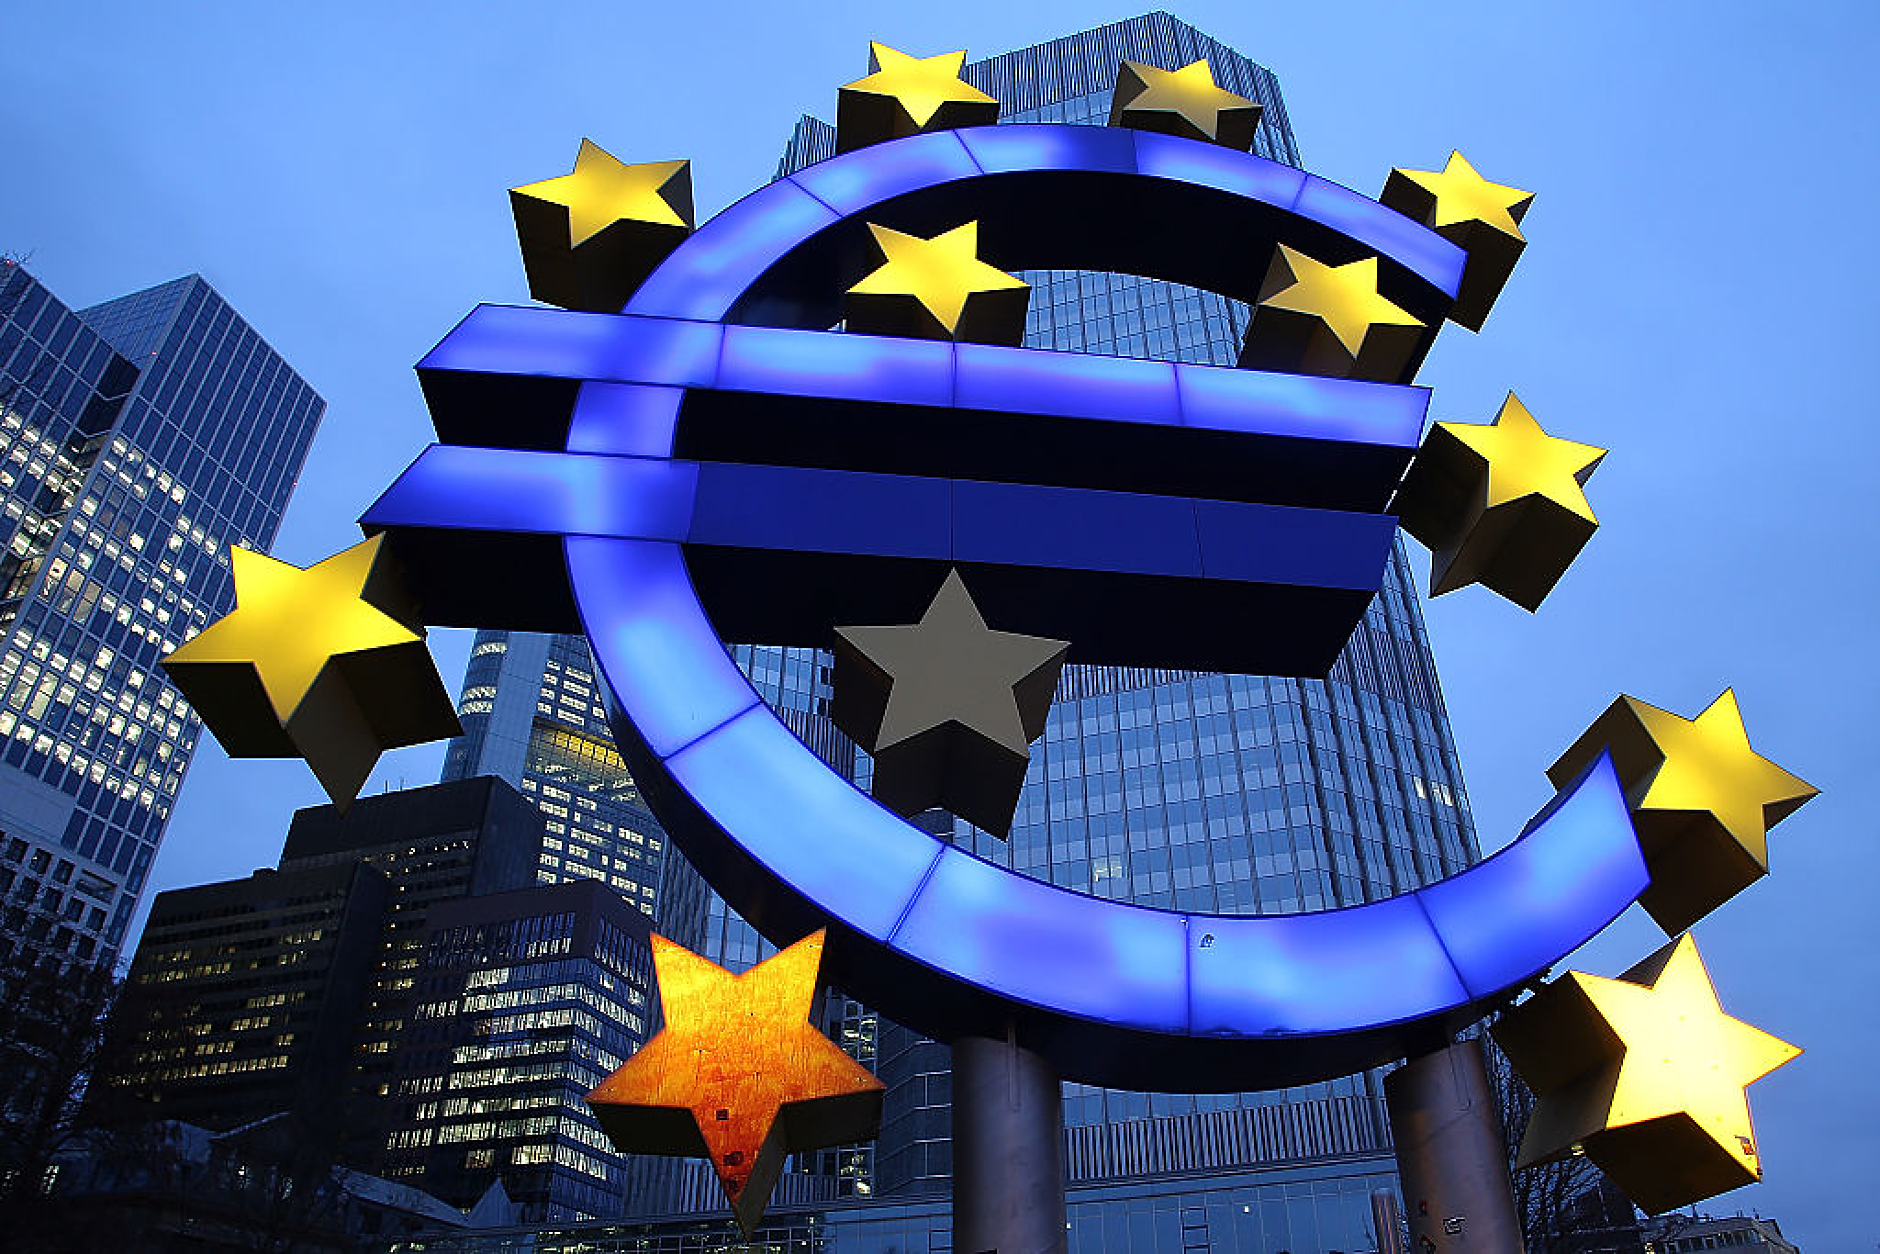 Инфлацията в ЕС и еврозоната се укроти около и под 3%